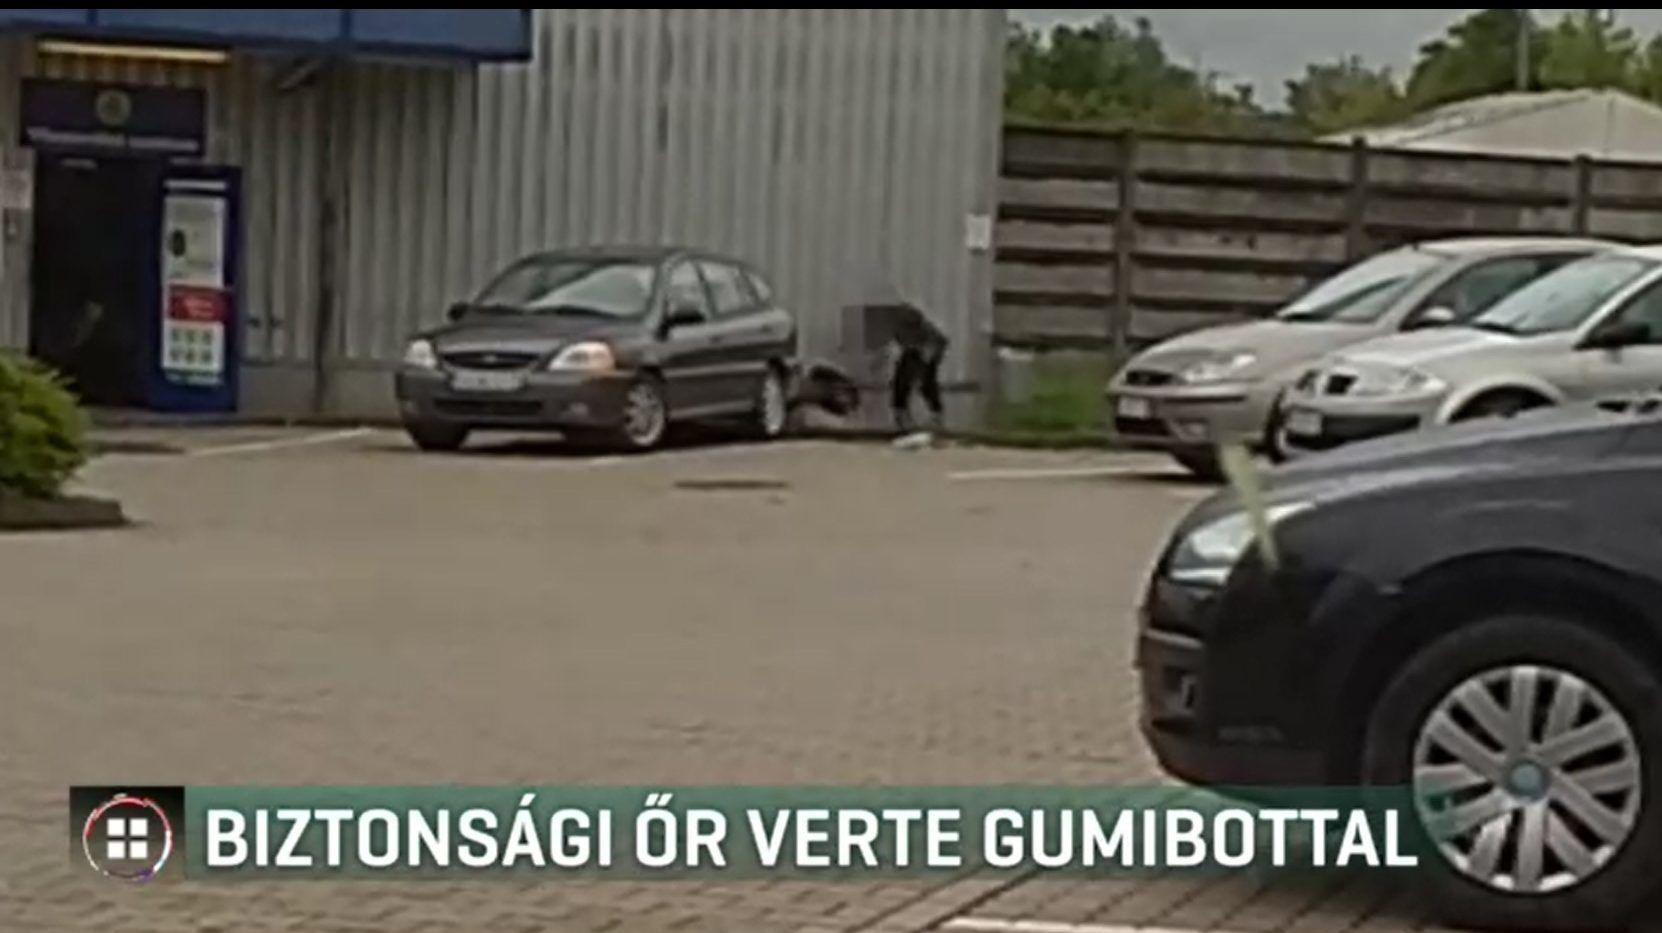 Gumibottal vert egy férfit a kaposvári áruház biztonsági őre